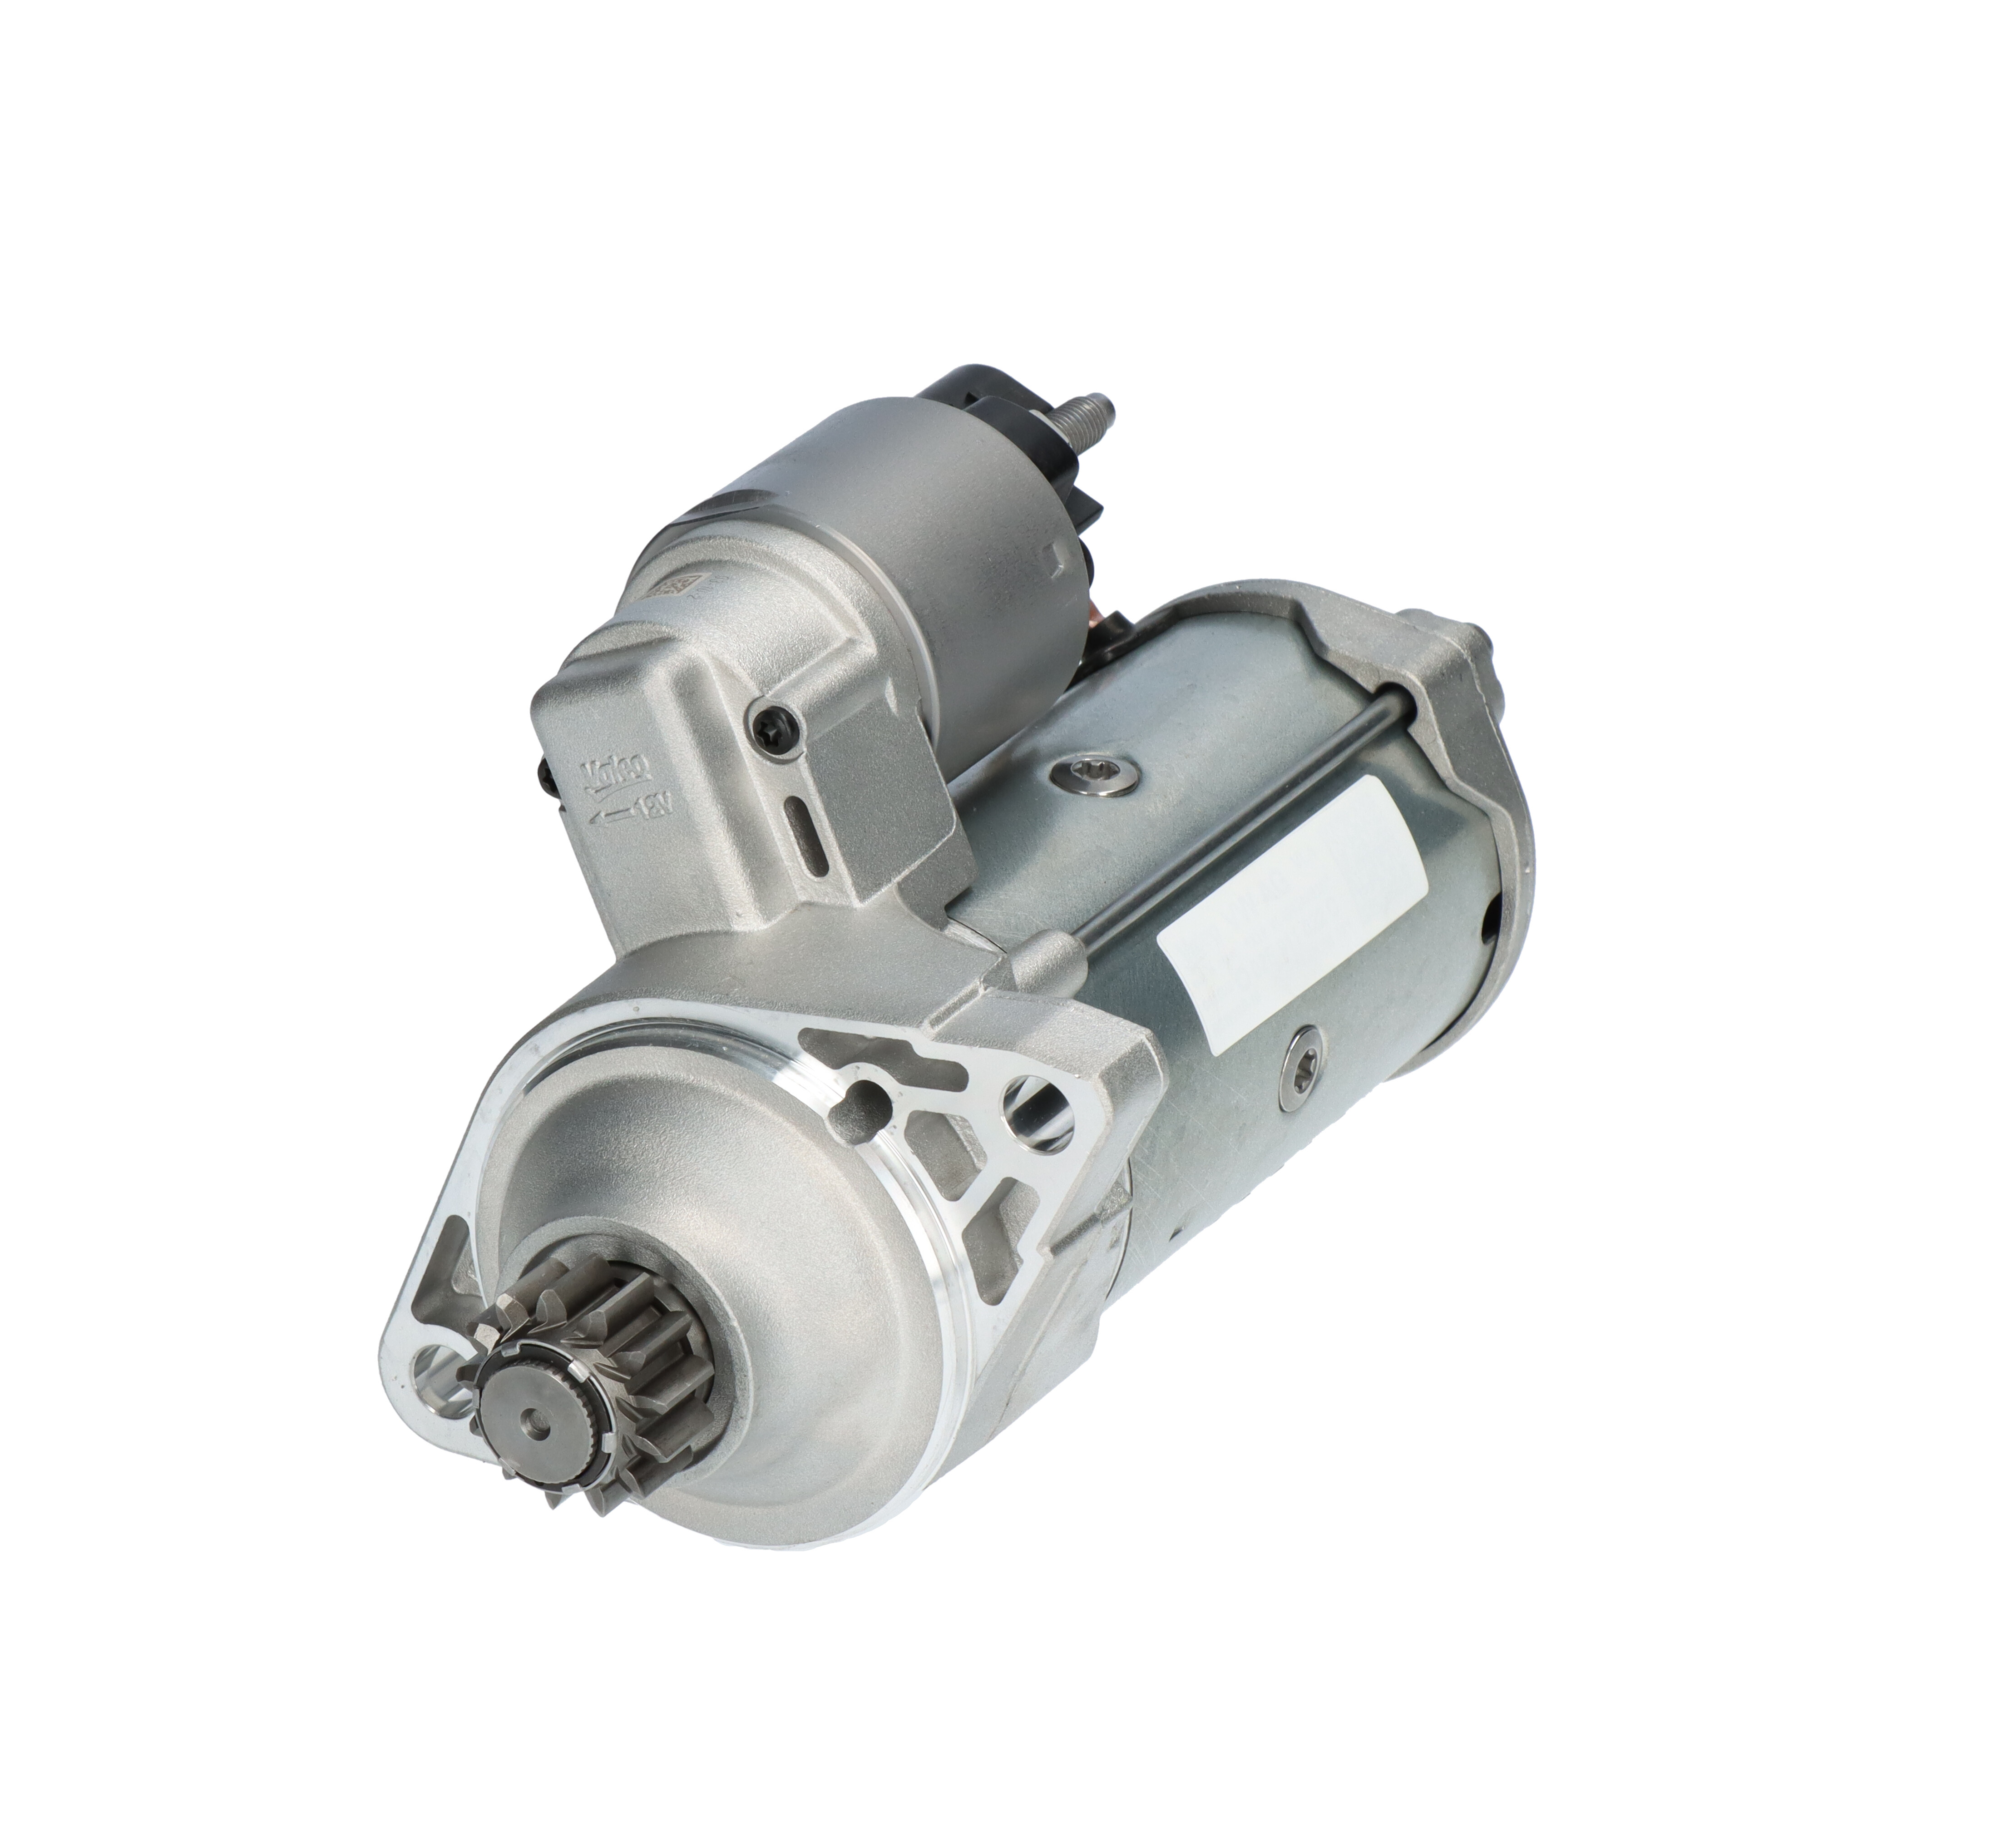 VALEO 458790 Starter motor SKODA experience and price